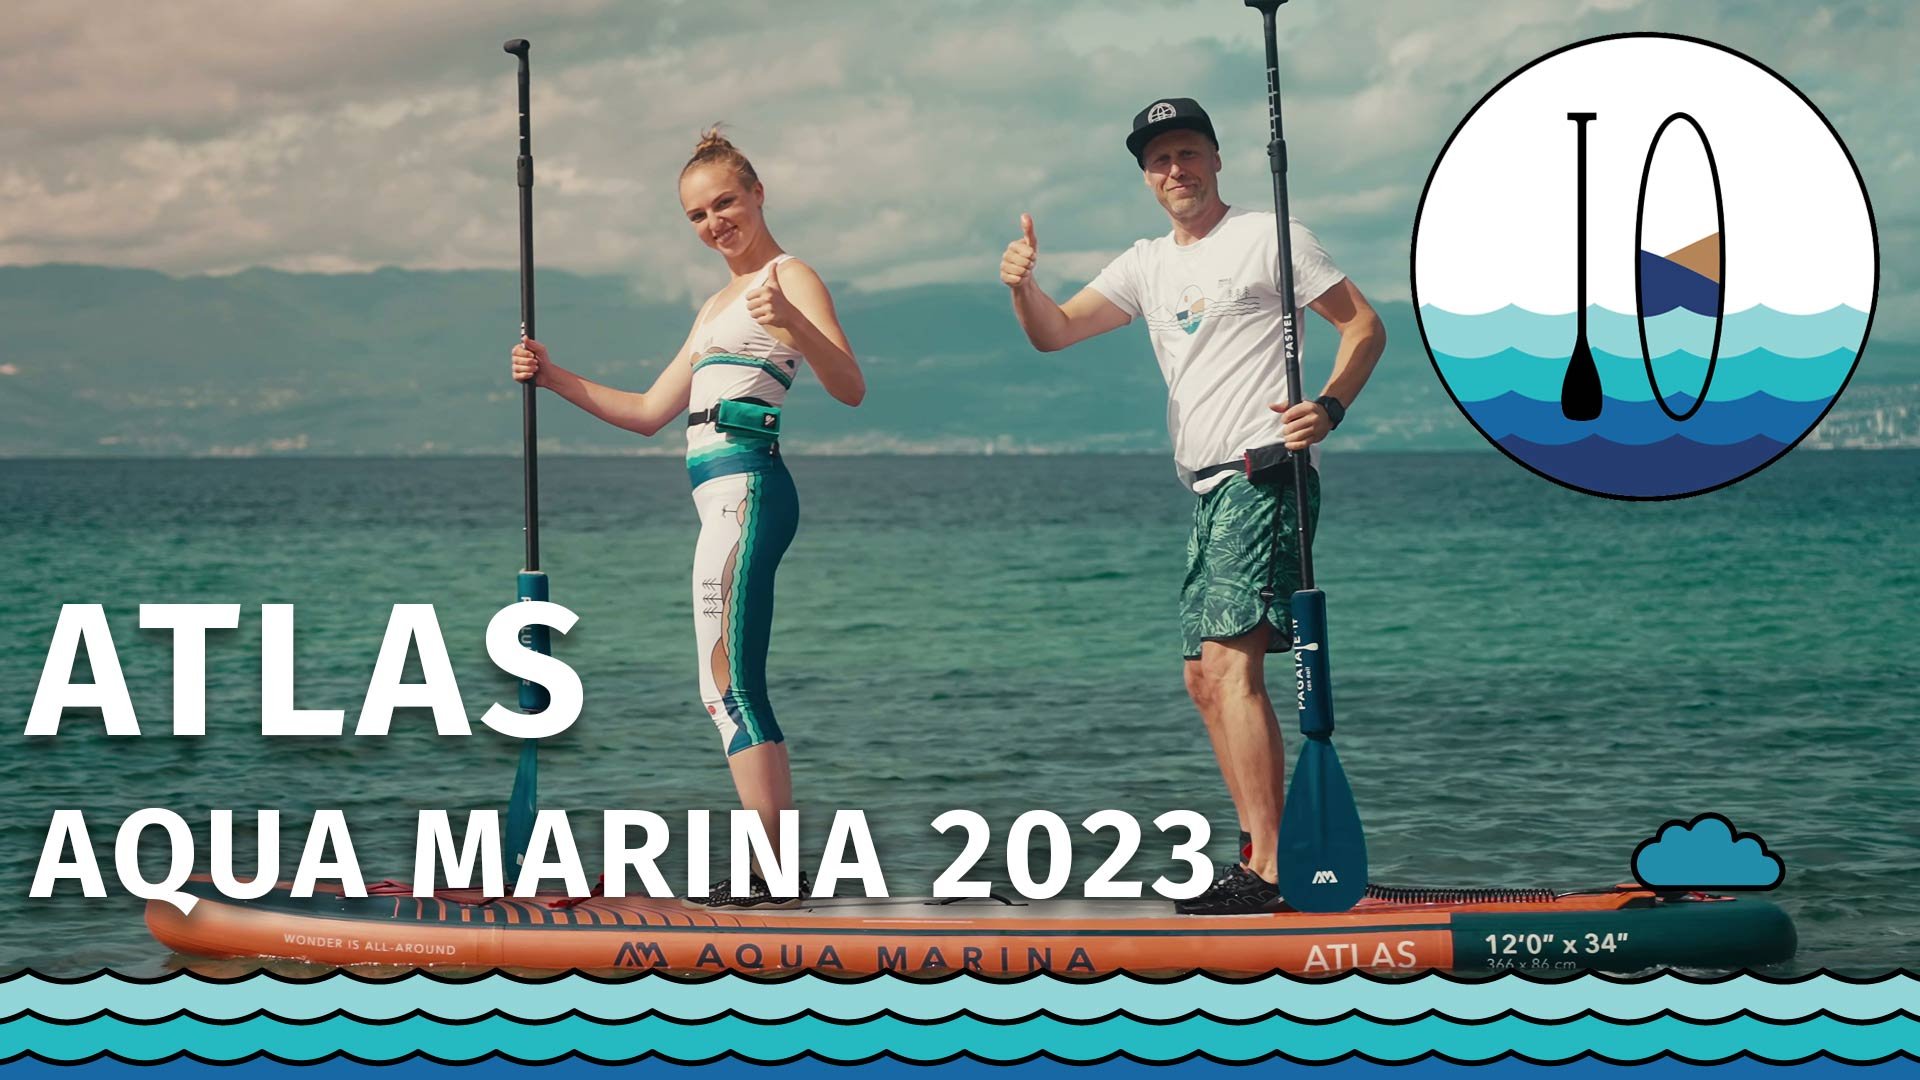 Deska SUP Aqua Marina Atlas 2023